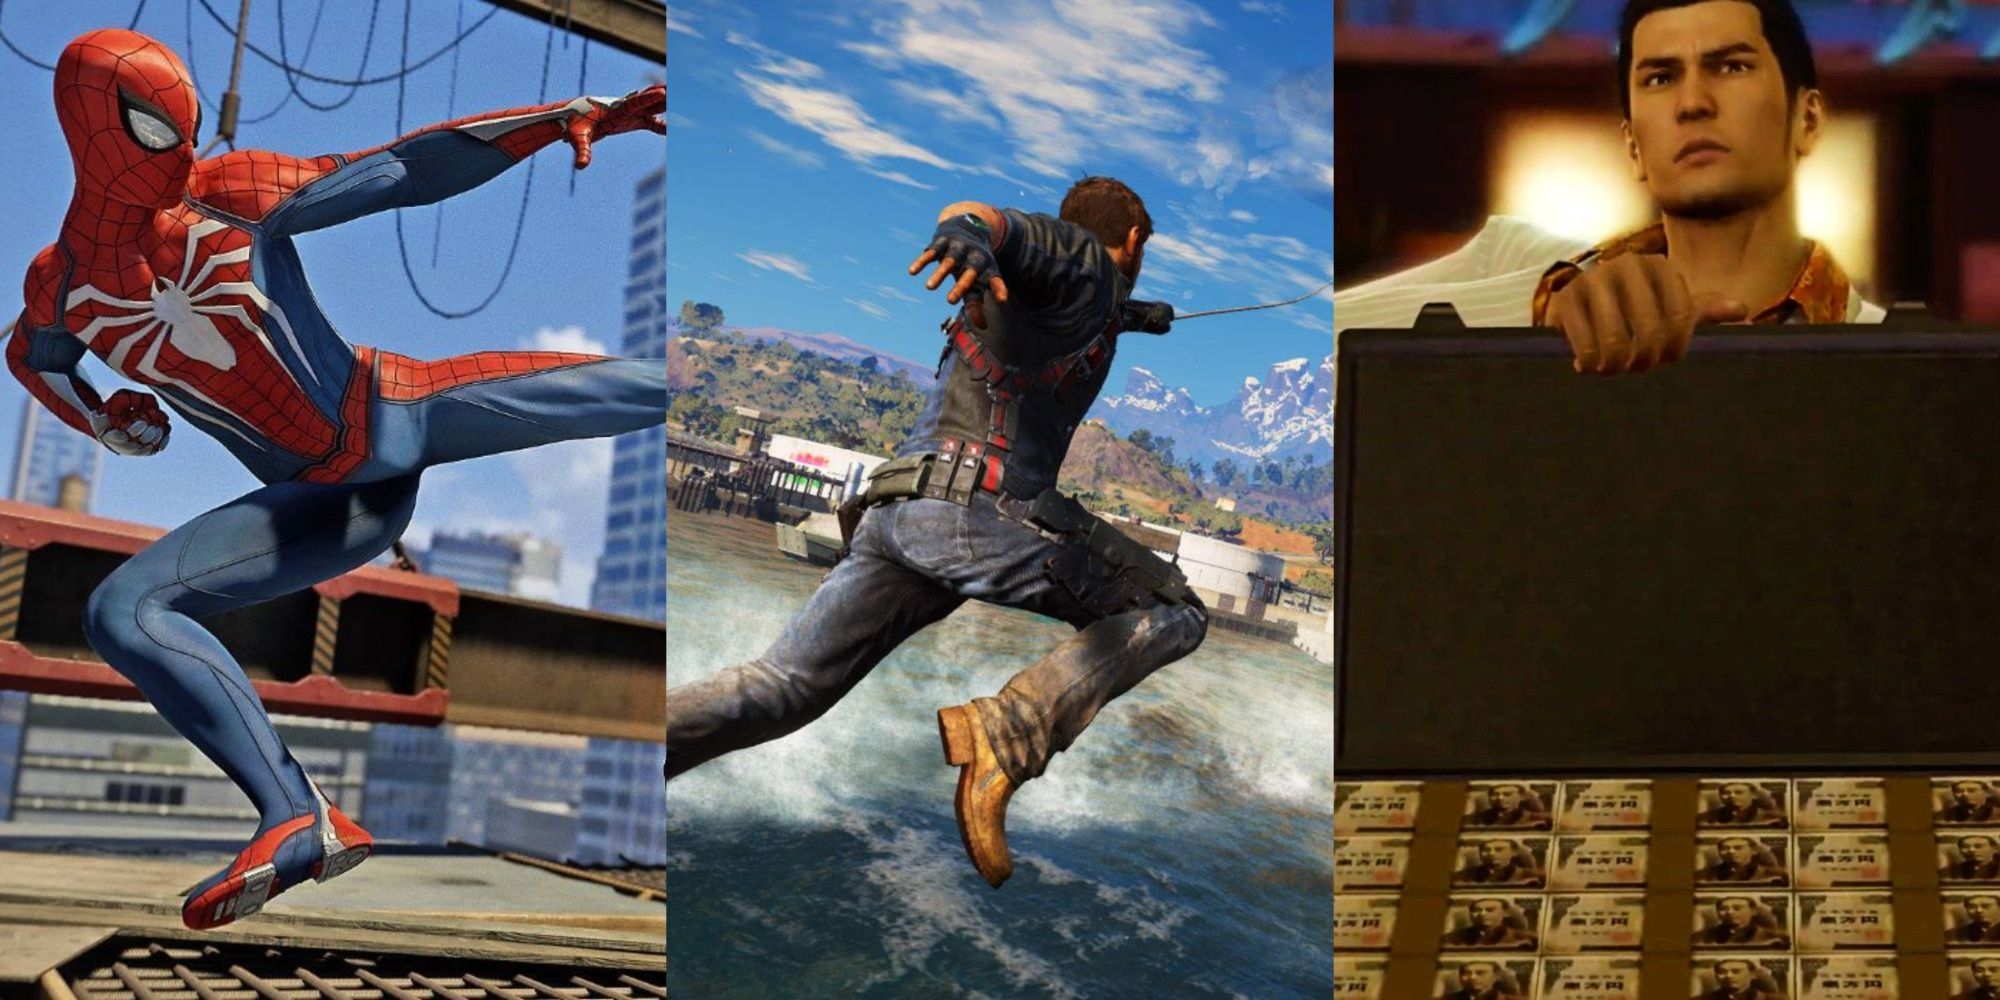 Eine Collage aus drei Bildern: Spider-Man in Trittposition, der einen unsichtbaren Feind angreift, Rico, der in Just Cause 3 über das Wasser kämpft, und Kiryu aus Yakuza, der eine offene Aktentasche voller Geld hält. 